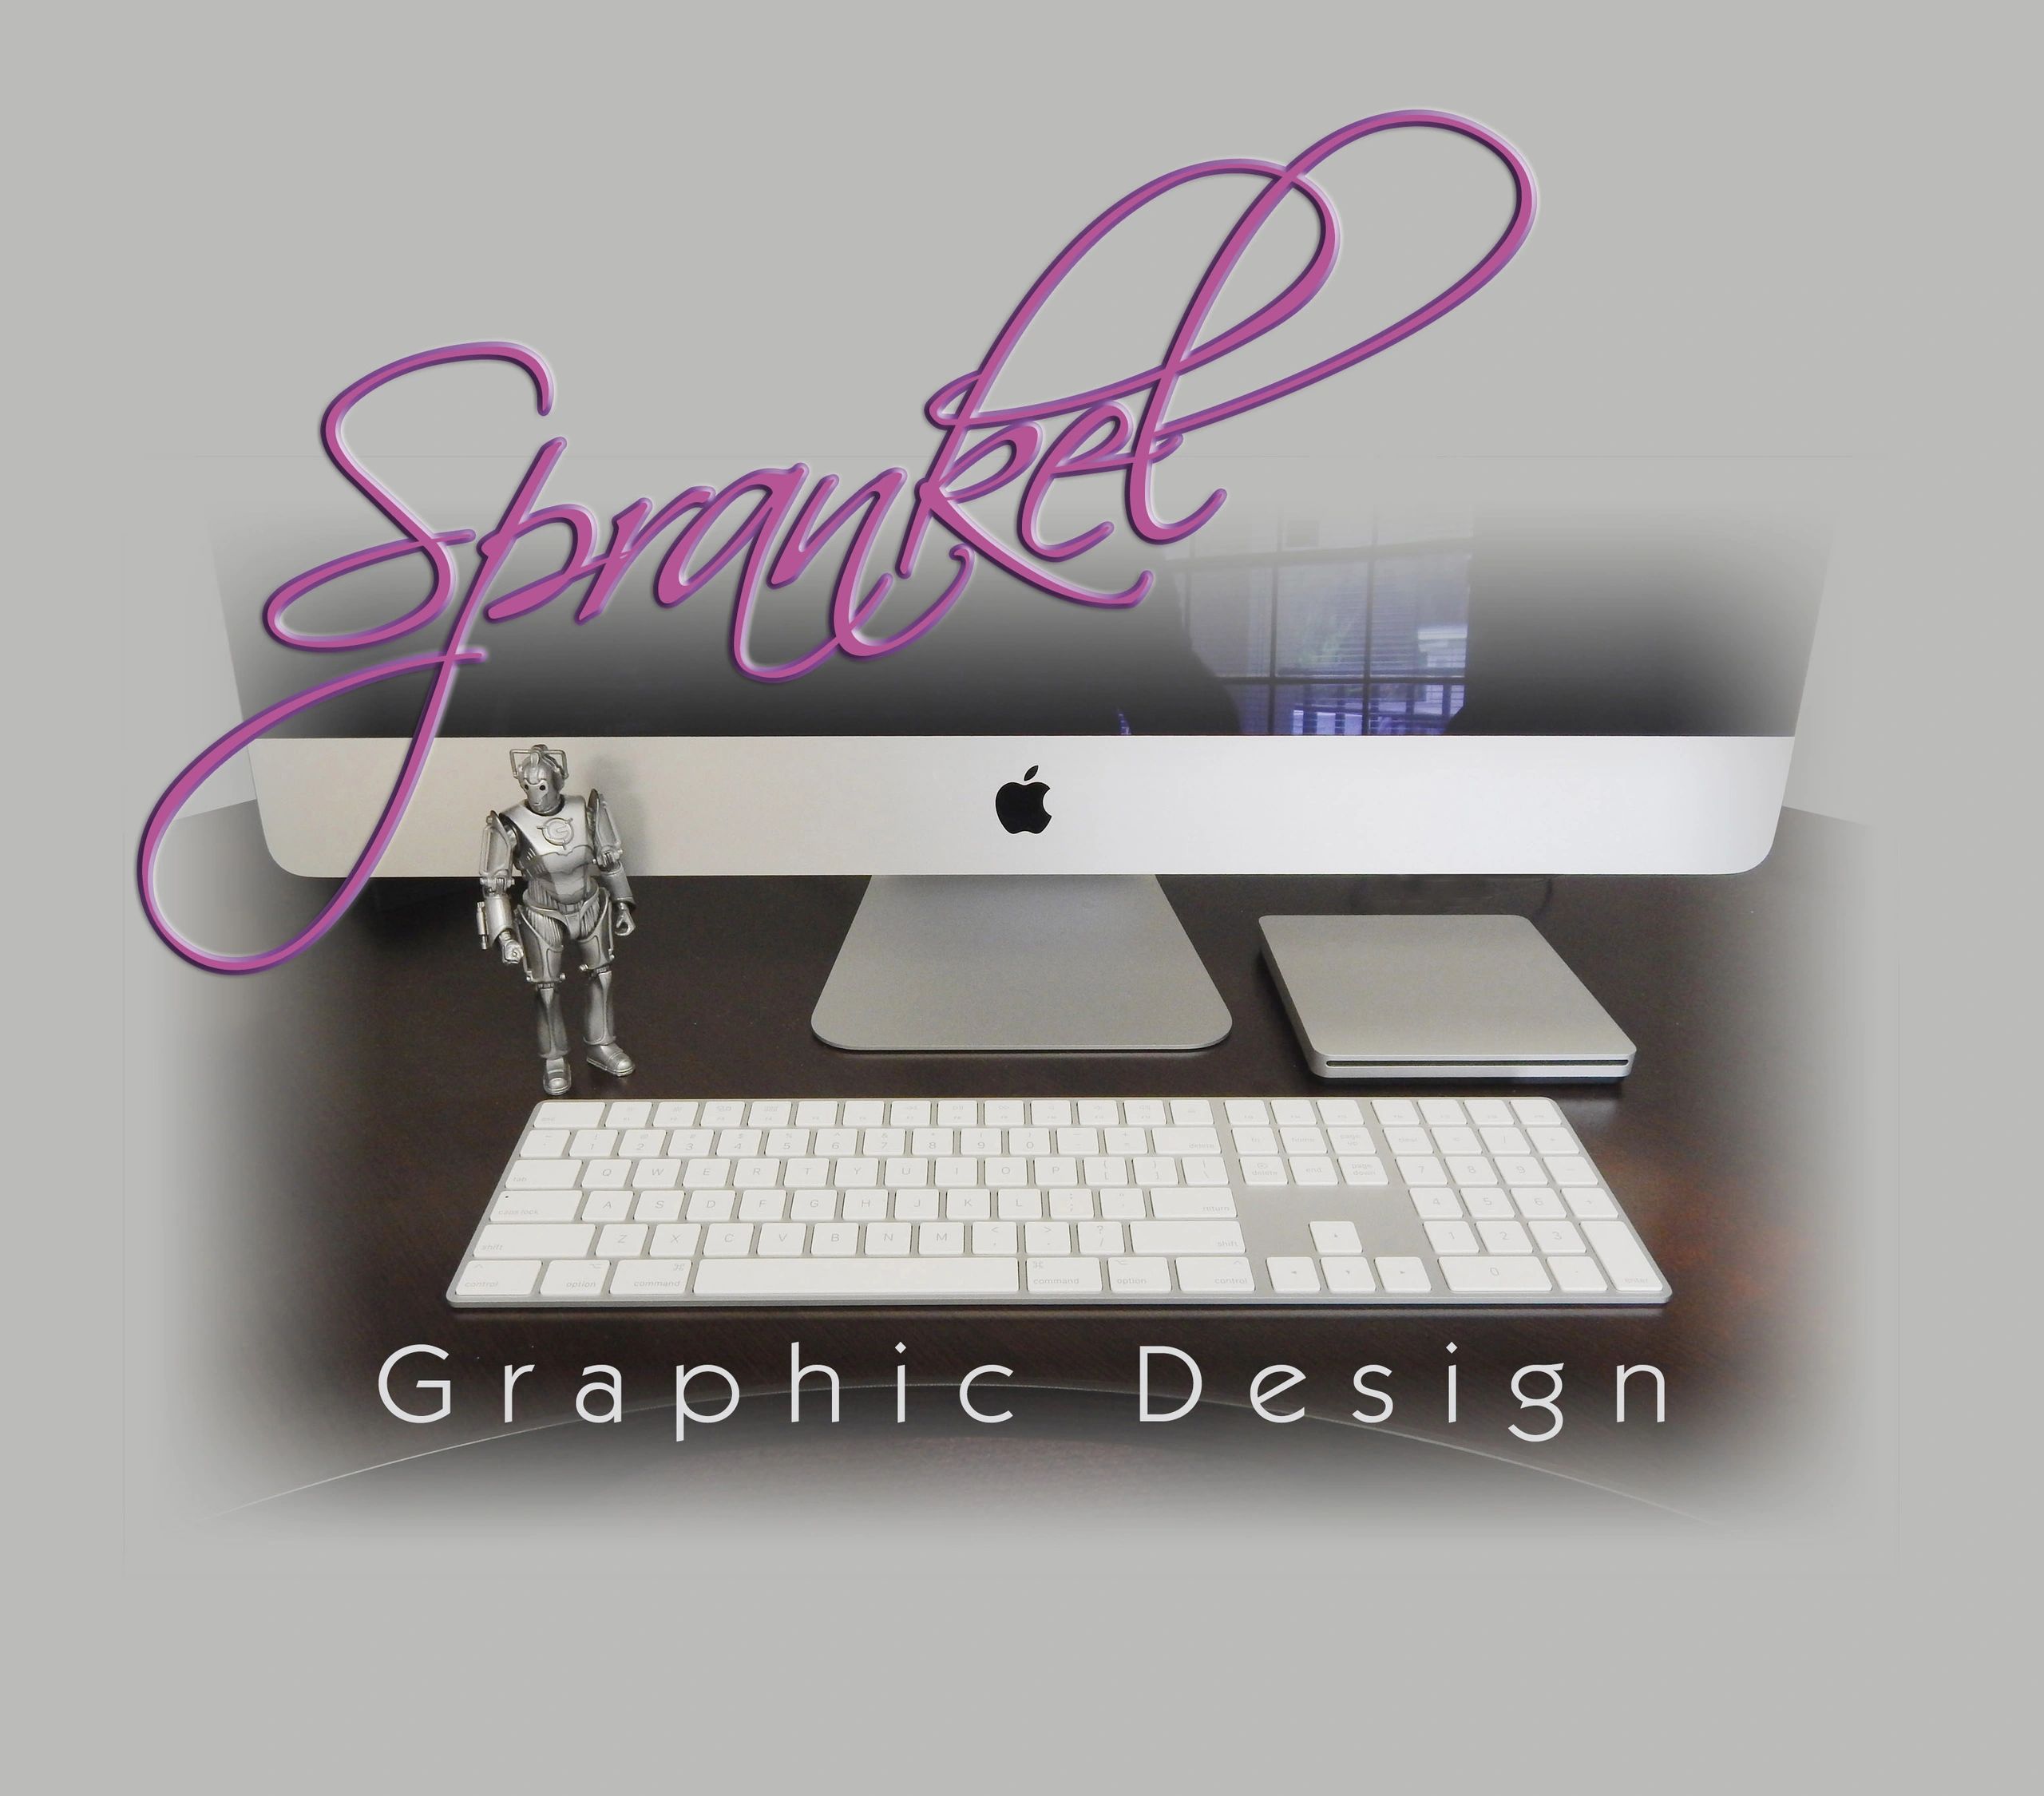 Sprankel Graphic Design